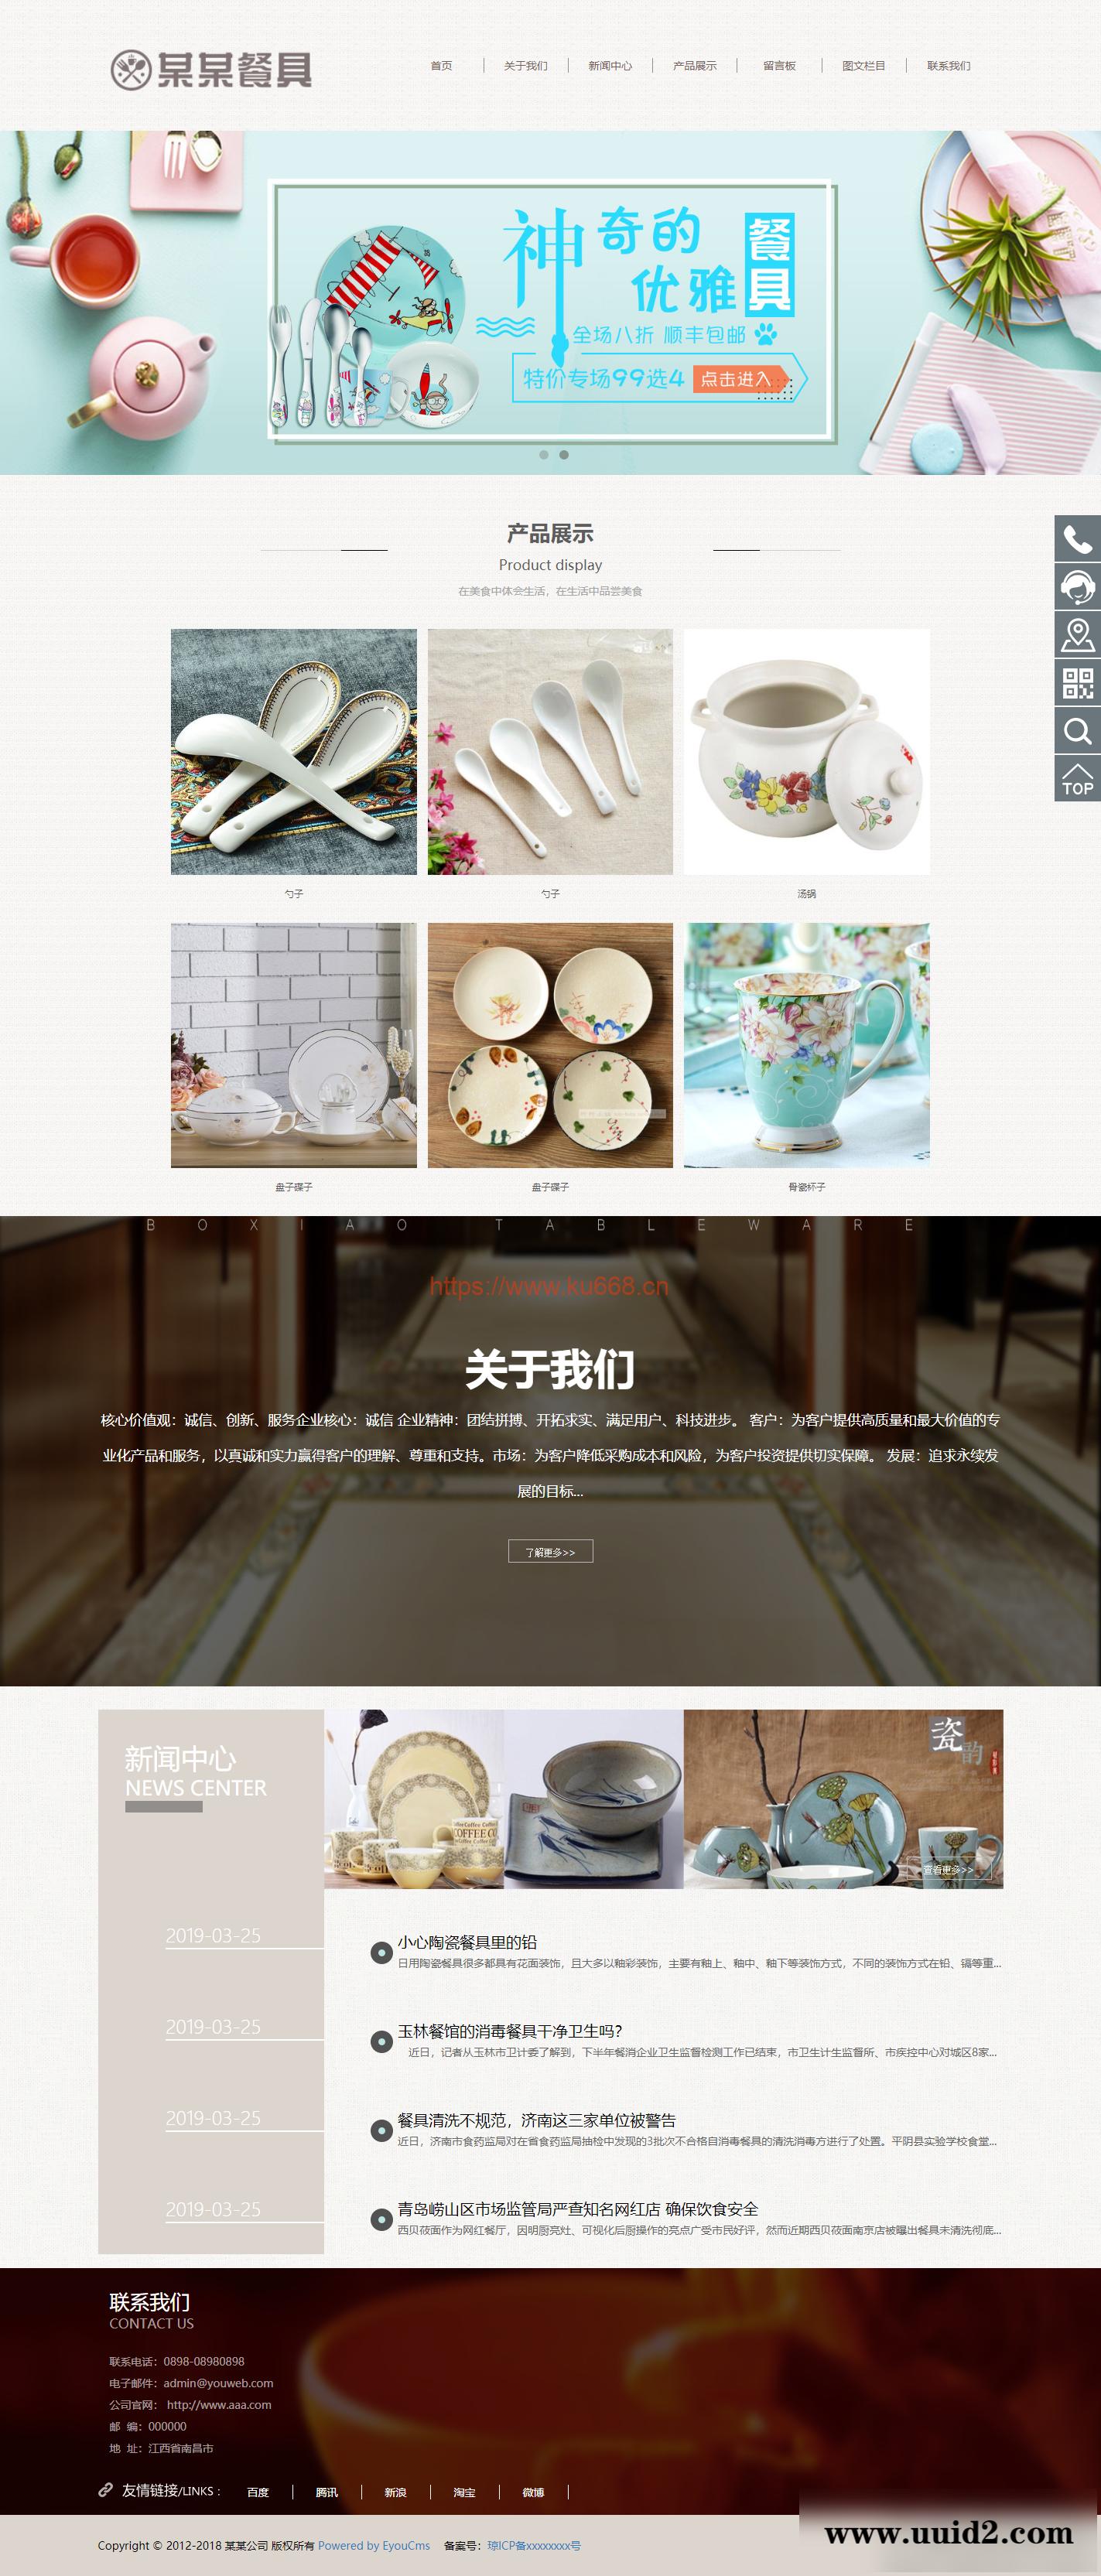 易优cms响应式陶瓷餐具公司网站模板源码 自适应手机端 带后台